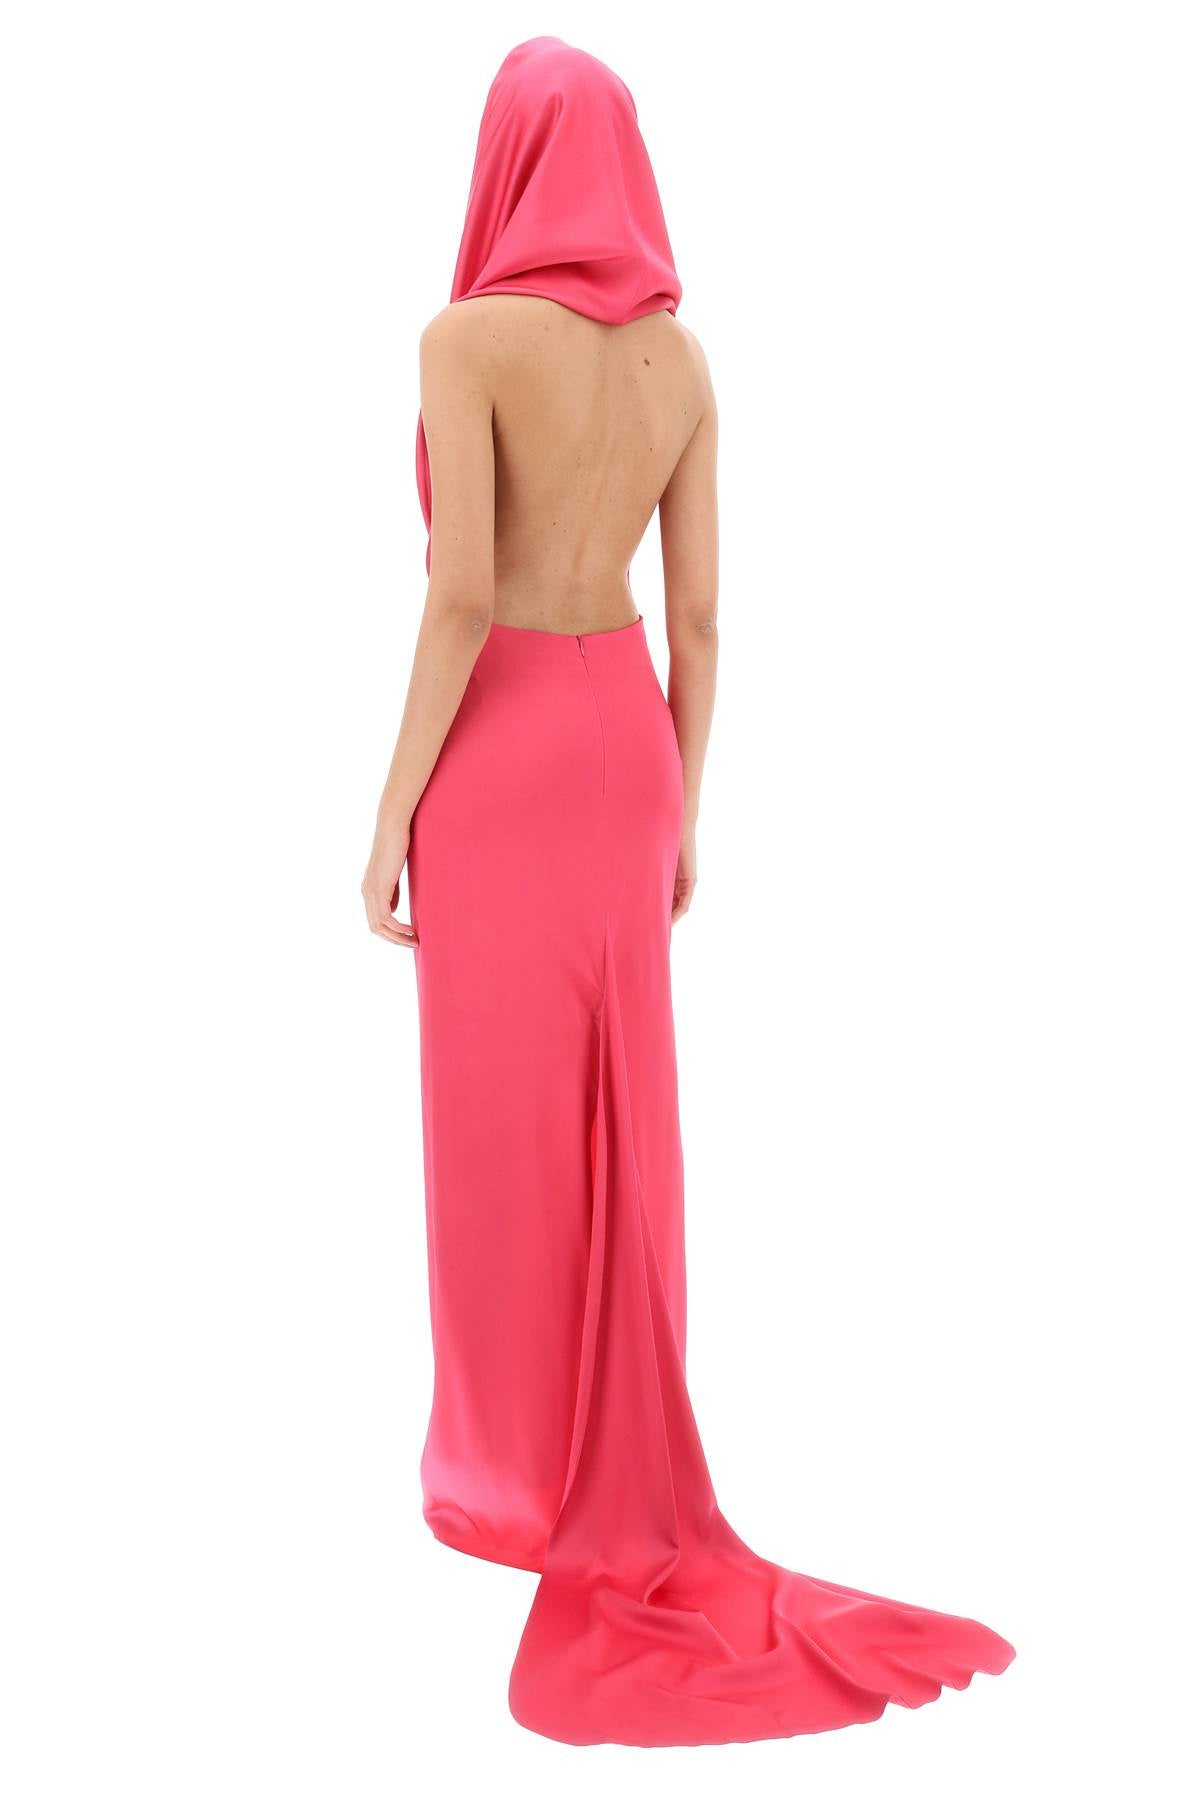 Chiếc váy dài màu hồng tuyệt đẹp với mũ built-in từ chất liệu satin